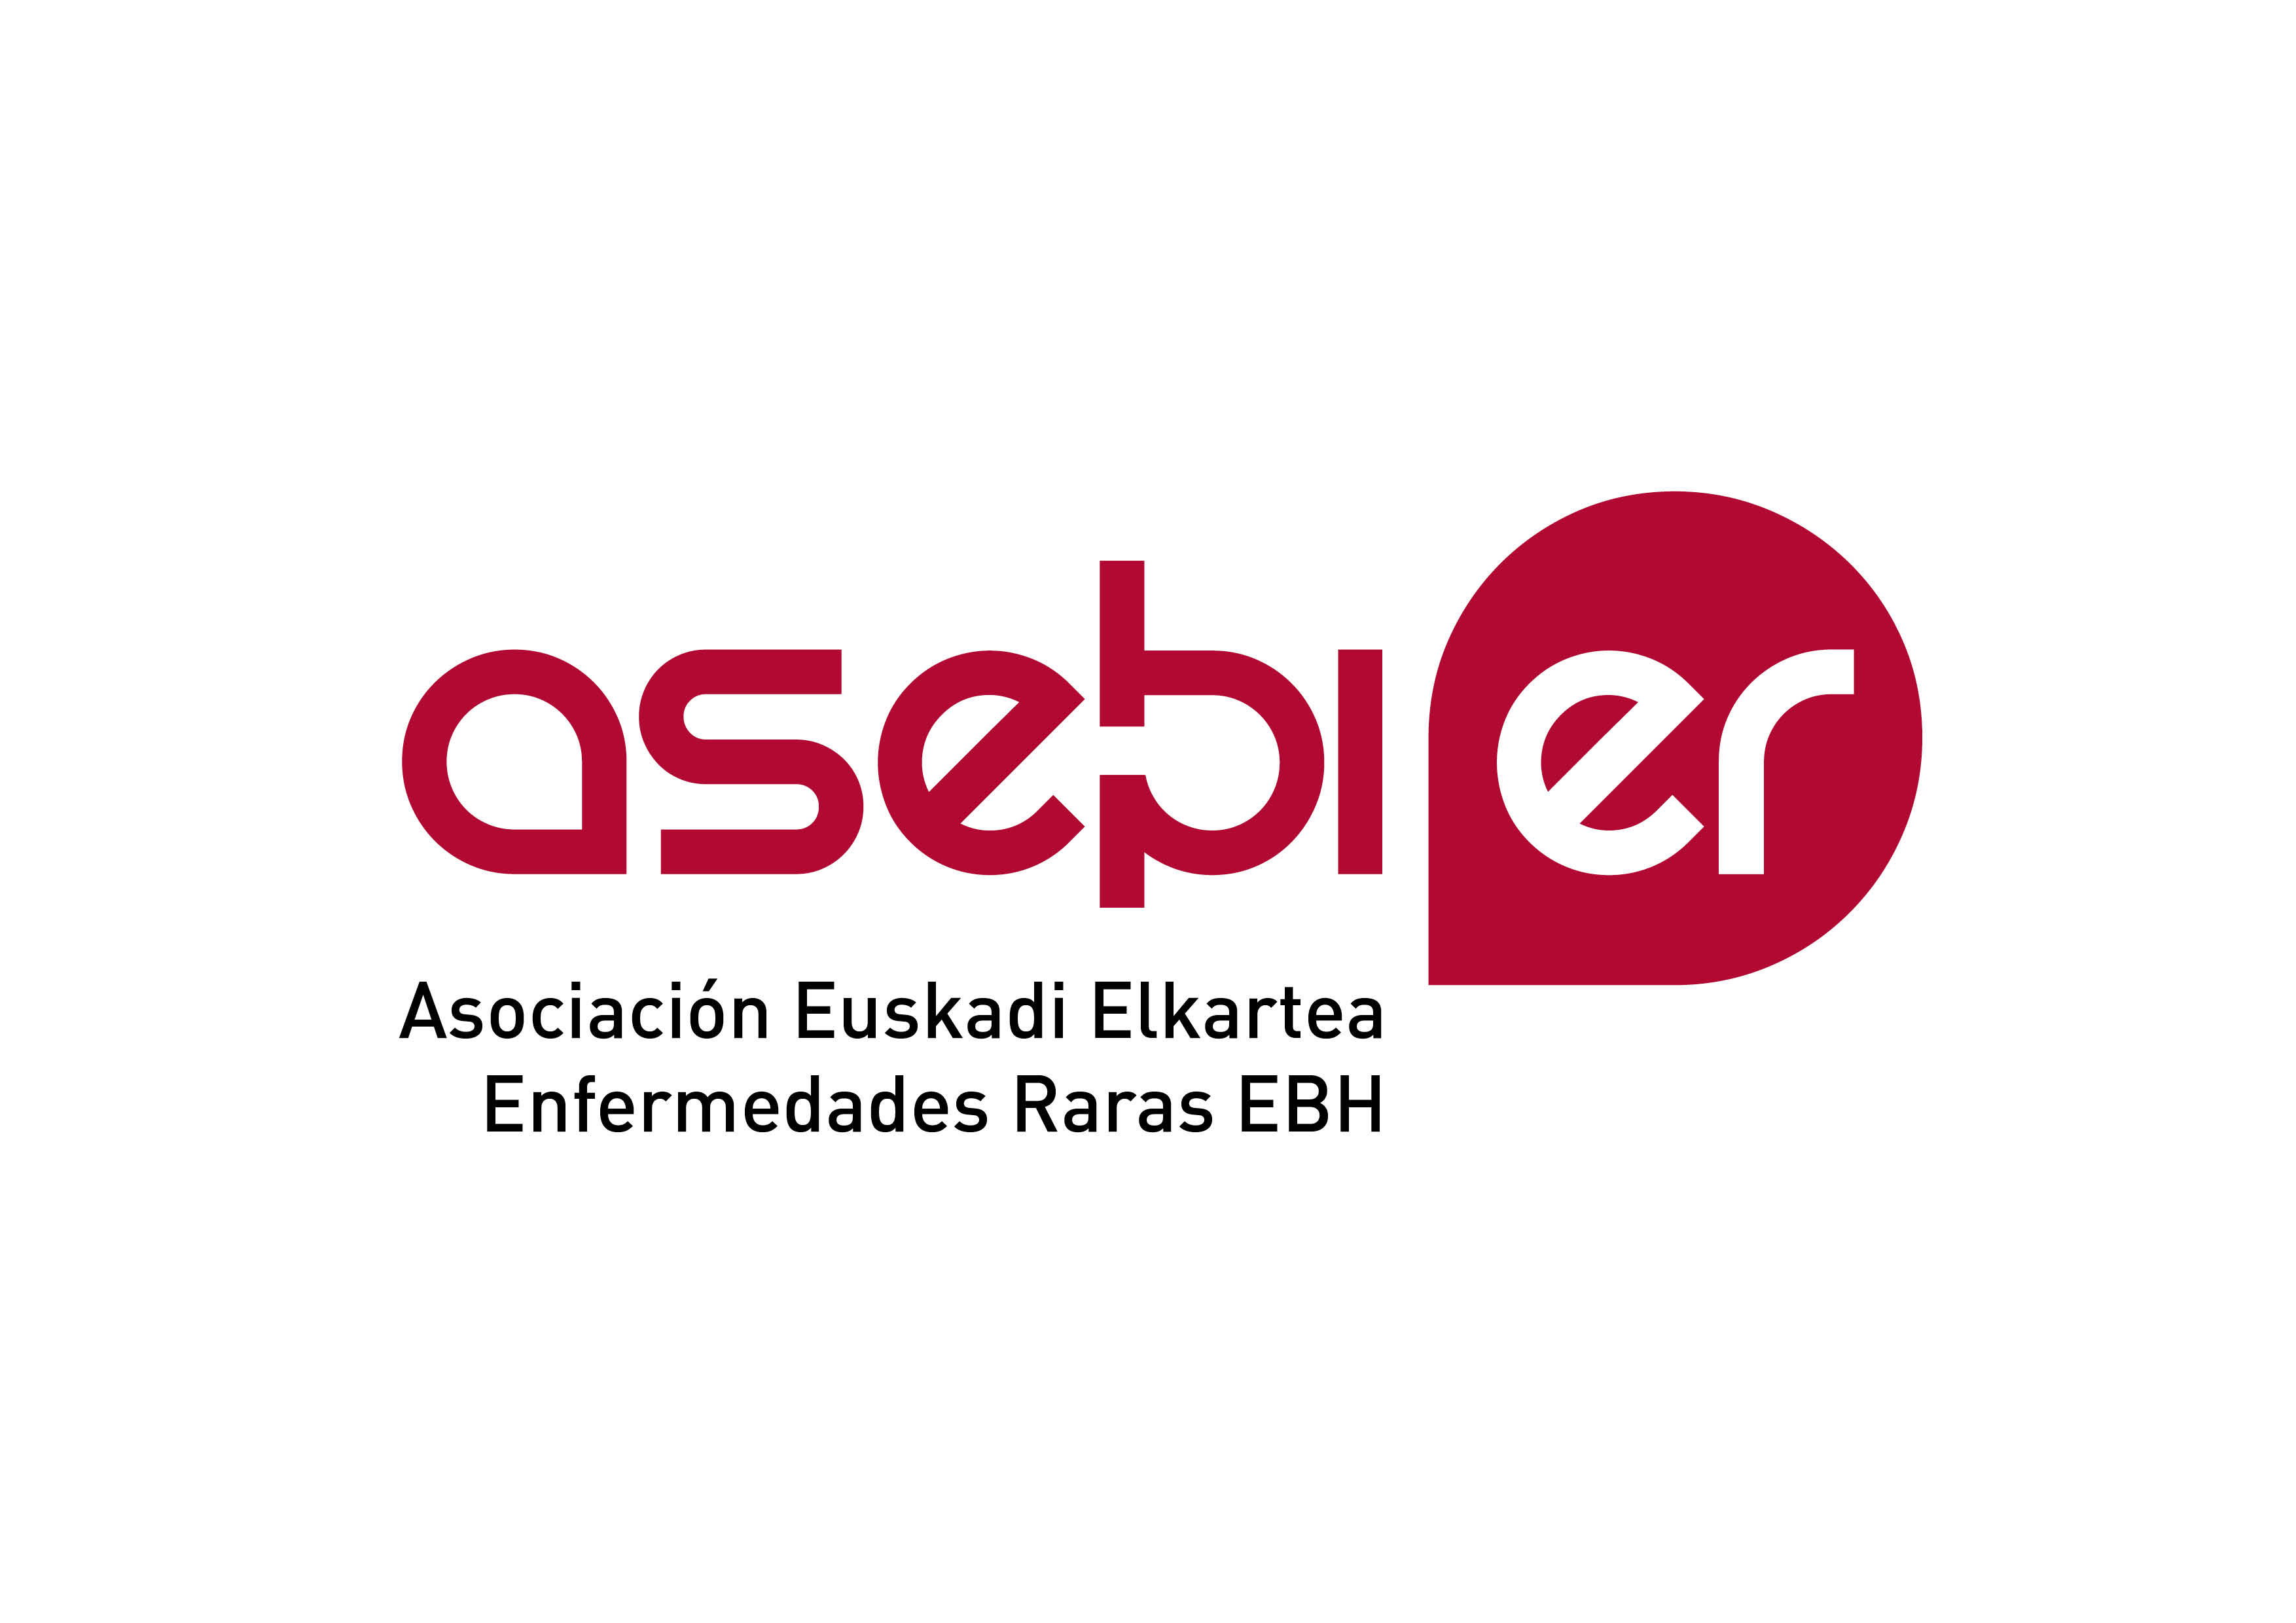  ASEBIER Asociación Euskadi Elkartea Enfermedades Raras EBH